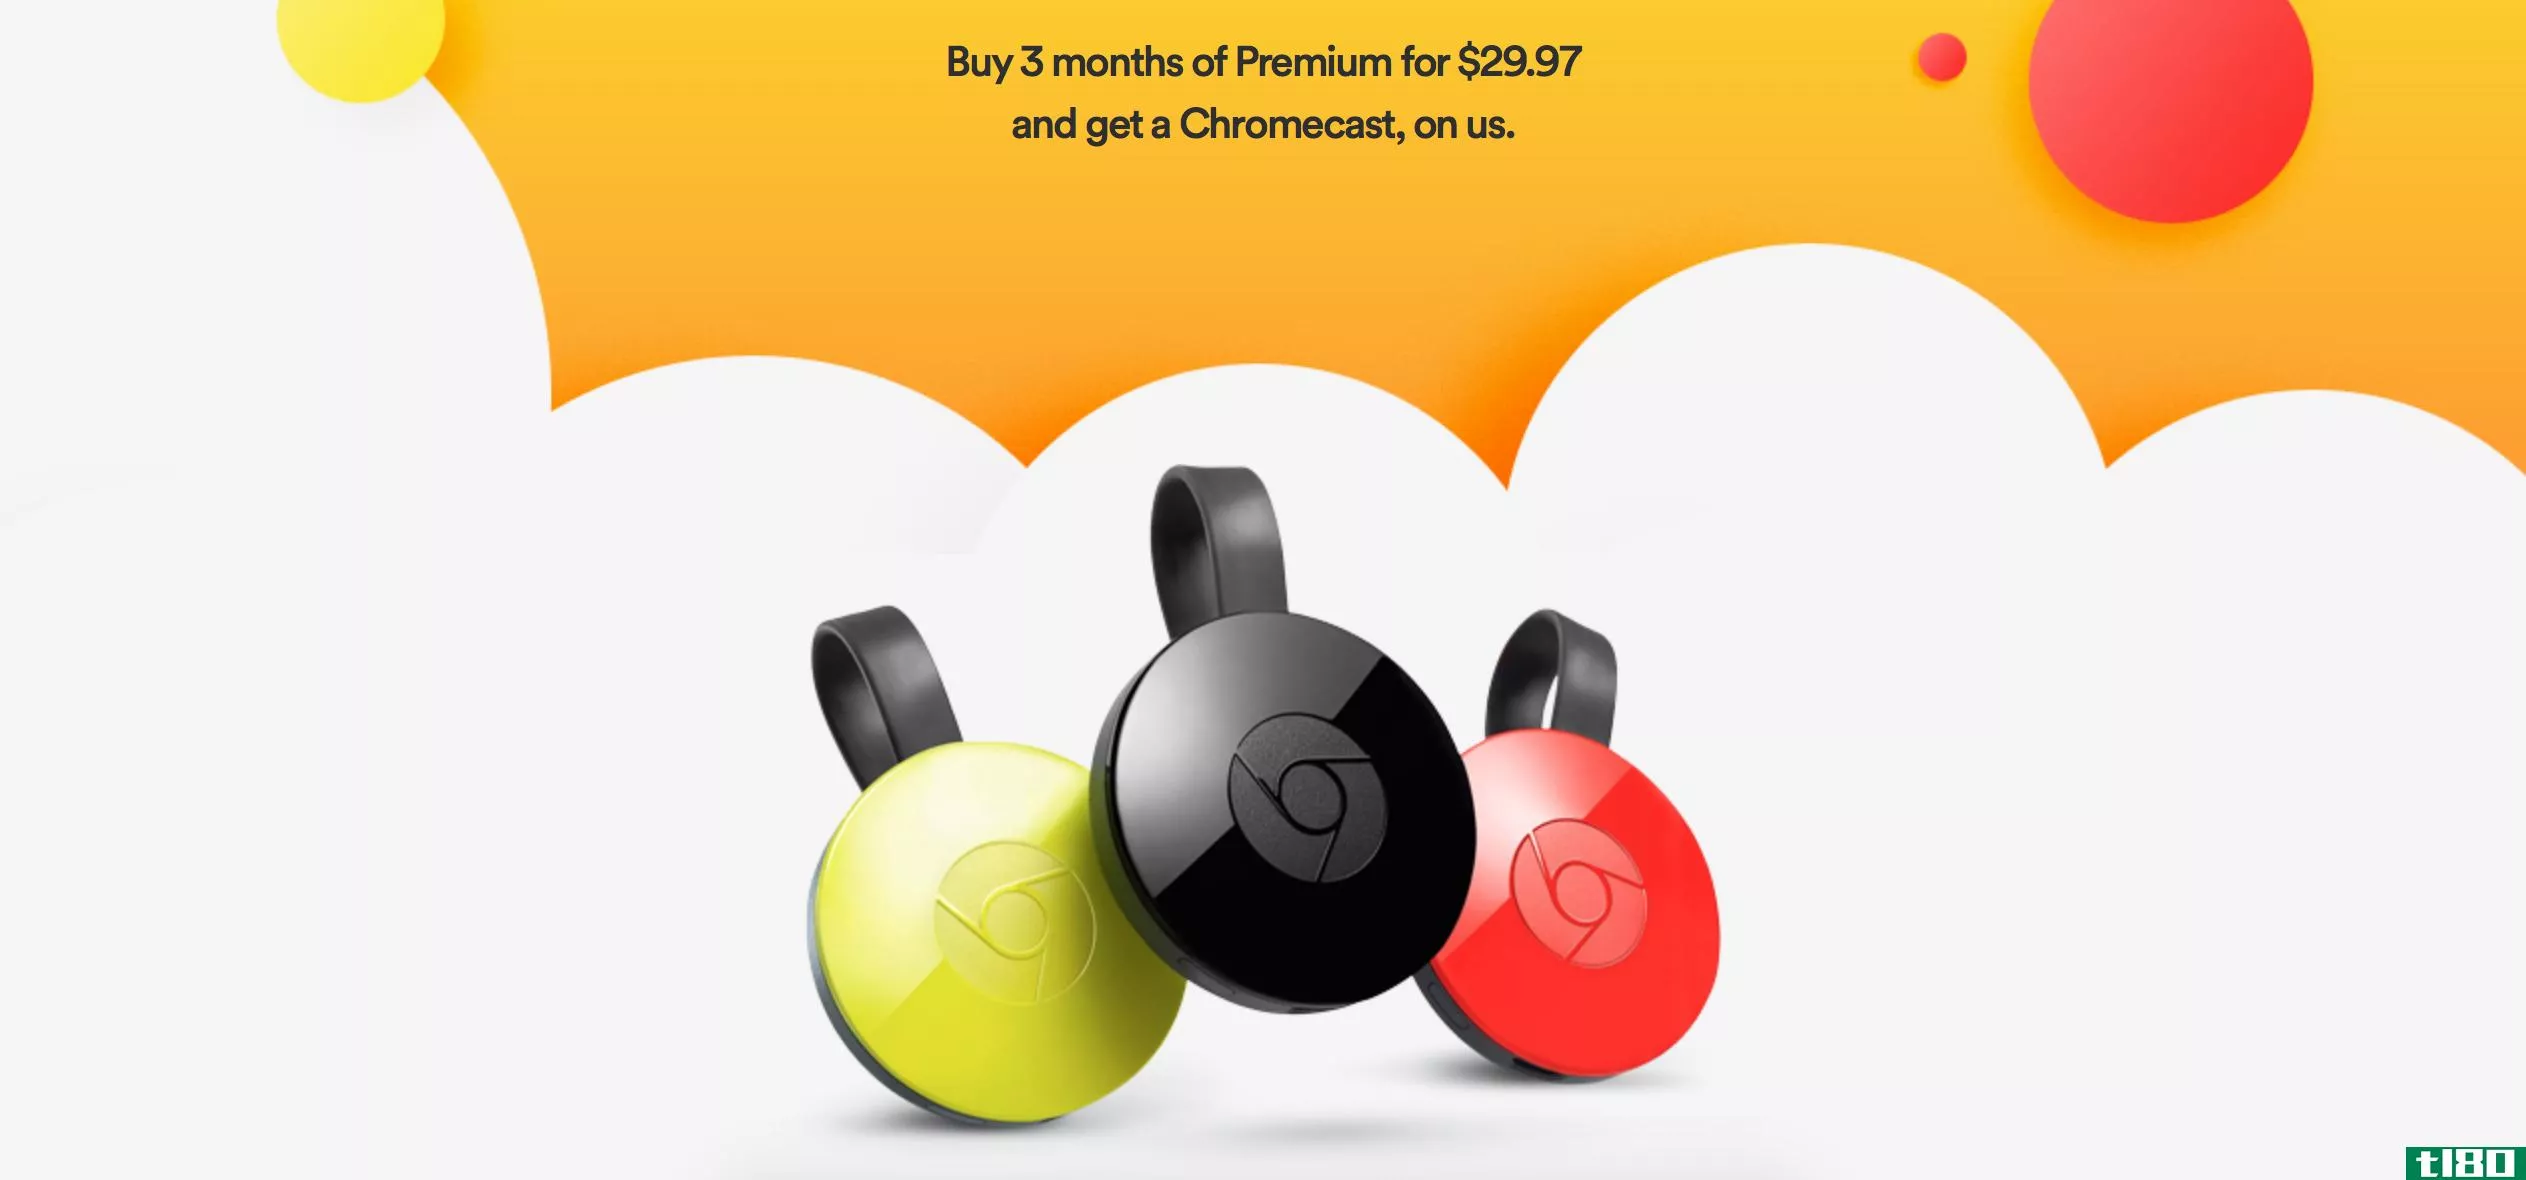 您可以通过支付三个月的spotify premium获得免费chromecast